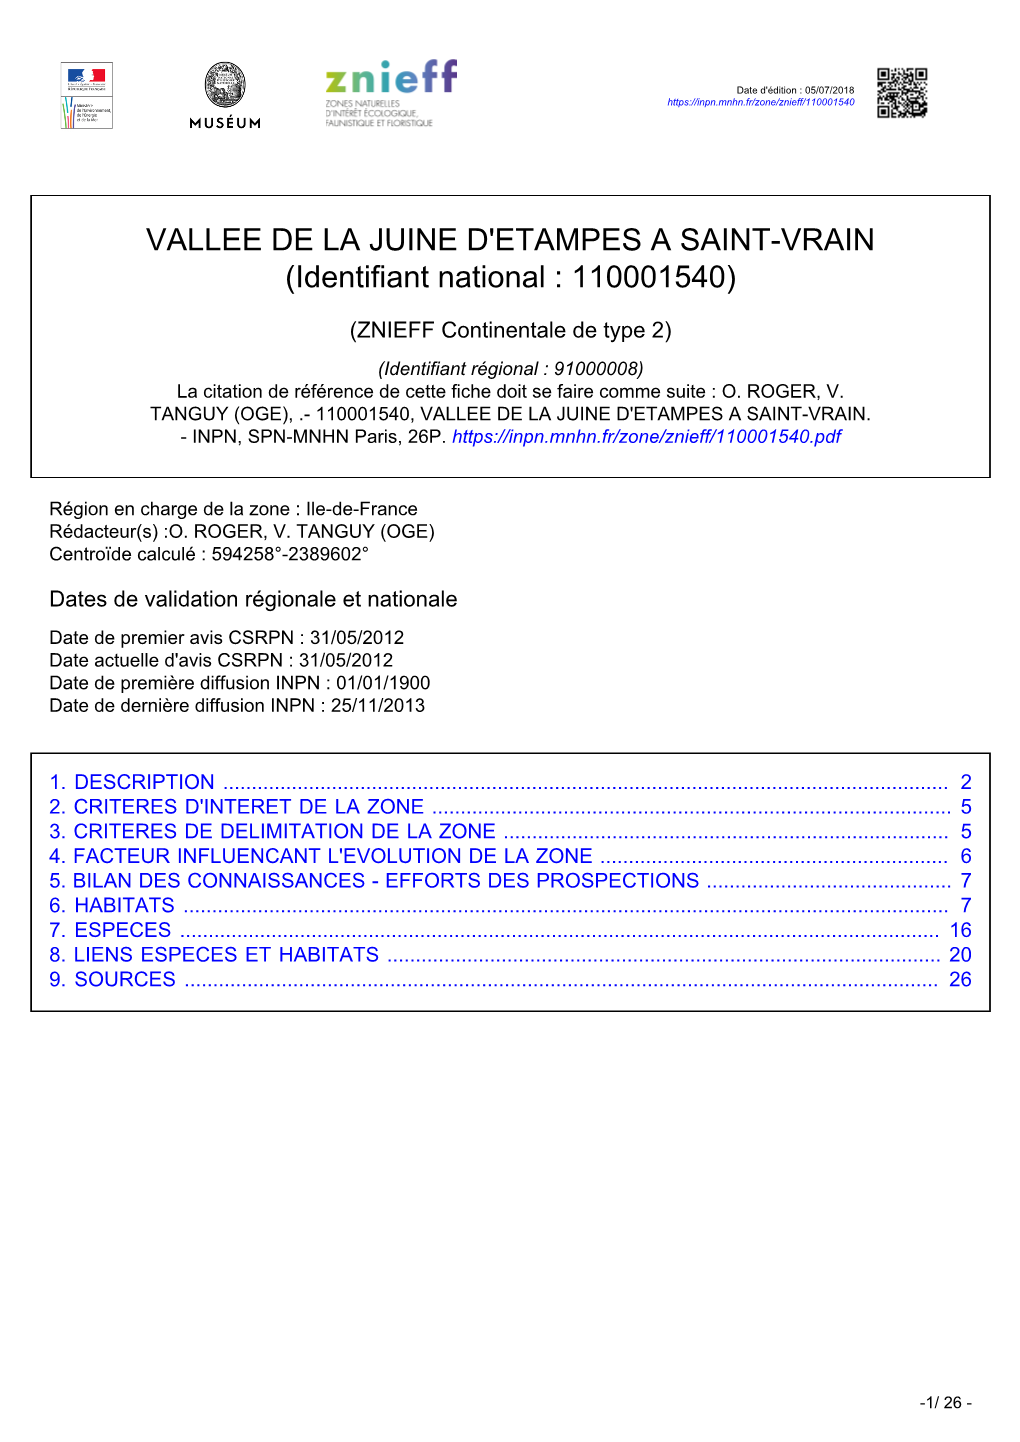 VALLEE DE LA JUINE D'etampes a SAINT-VRAIN (Identifiant National : 110001540)